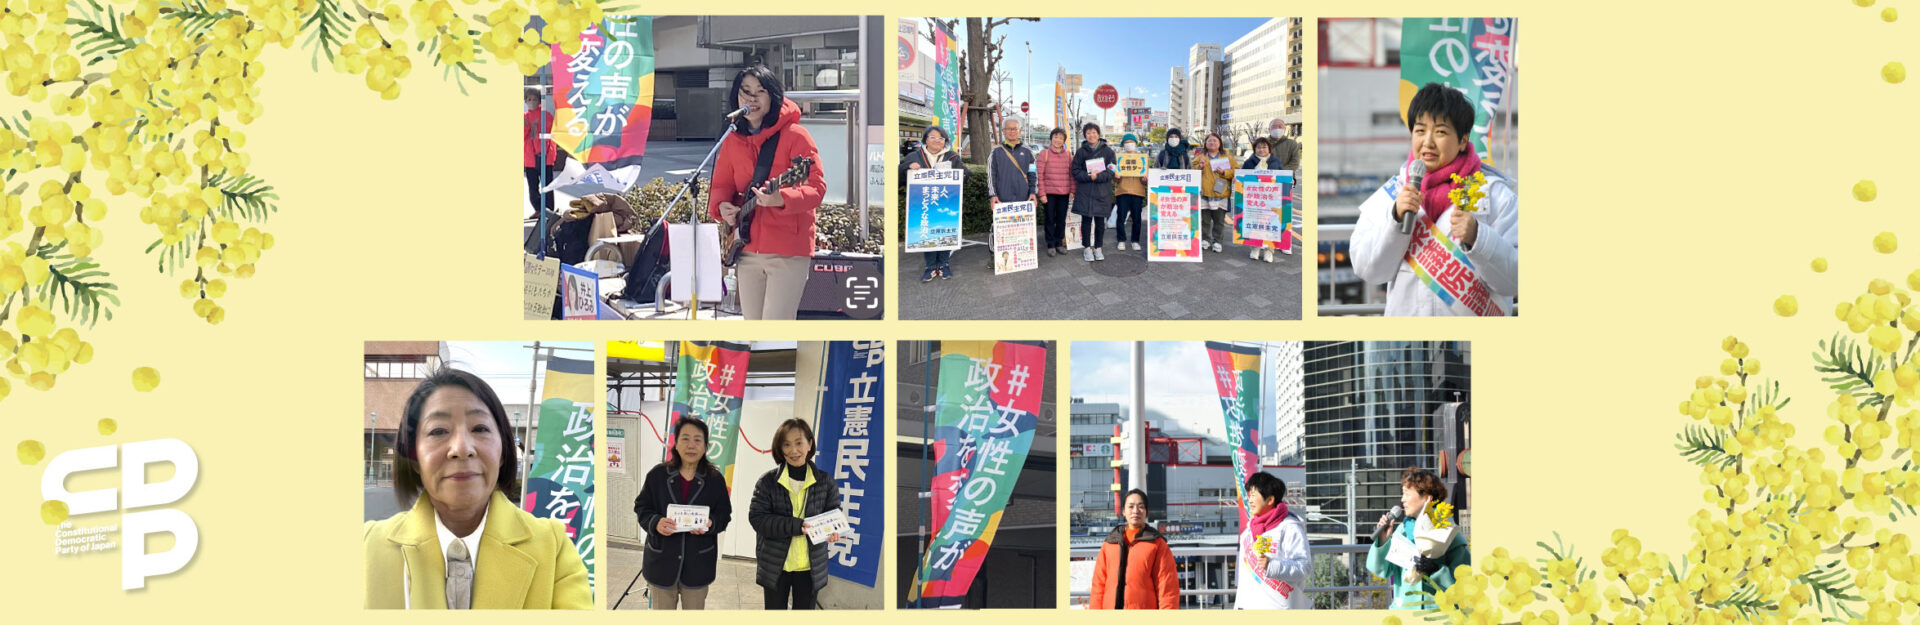 国際女性デー街頭演説会を大阪各所で実施しました